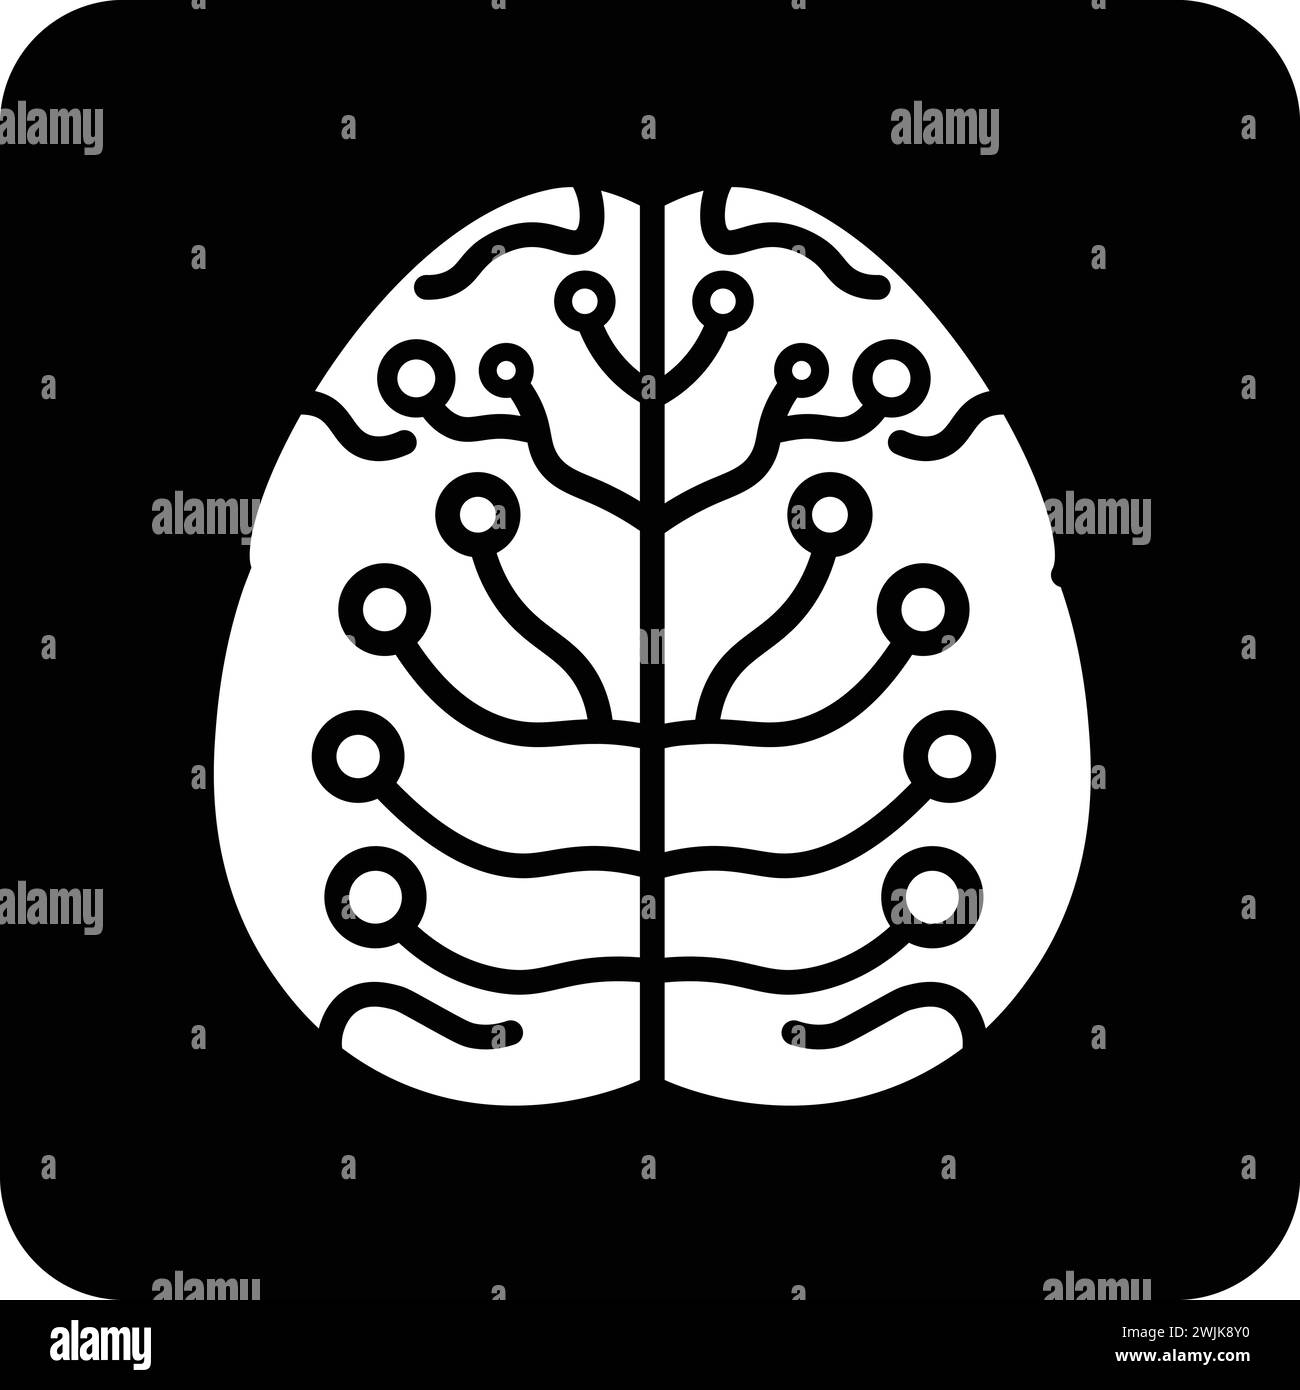 Schwarze und weiße flache Vektorillustration des Neurologie-Symbols Stock Vektor